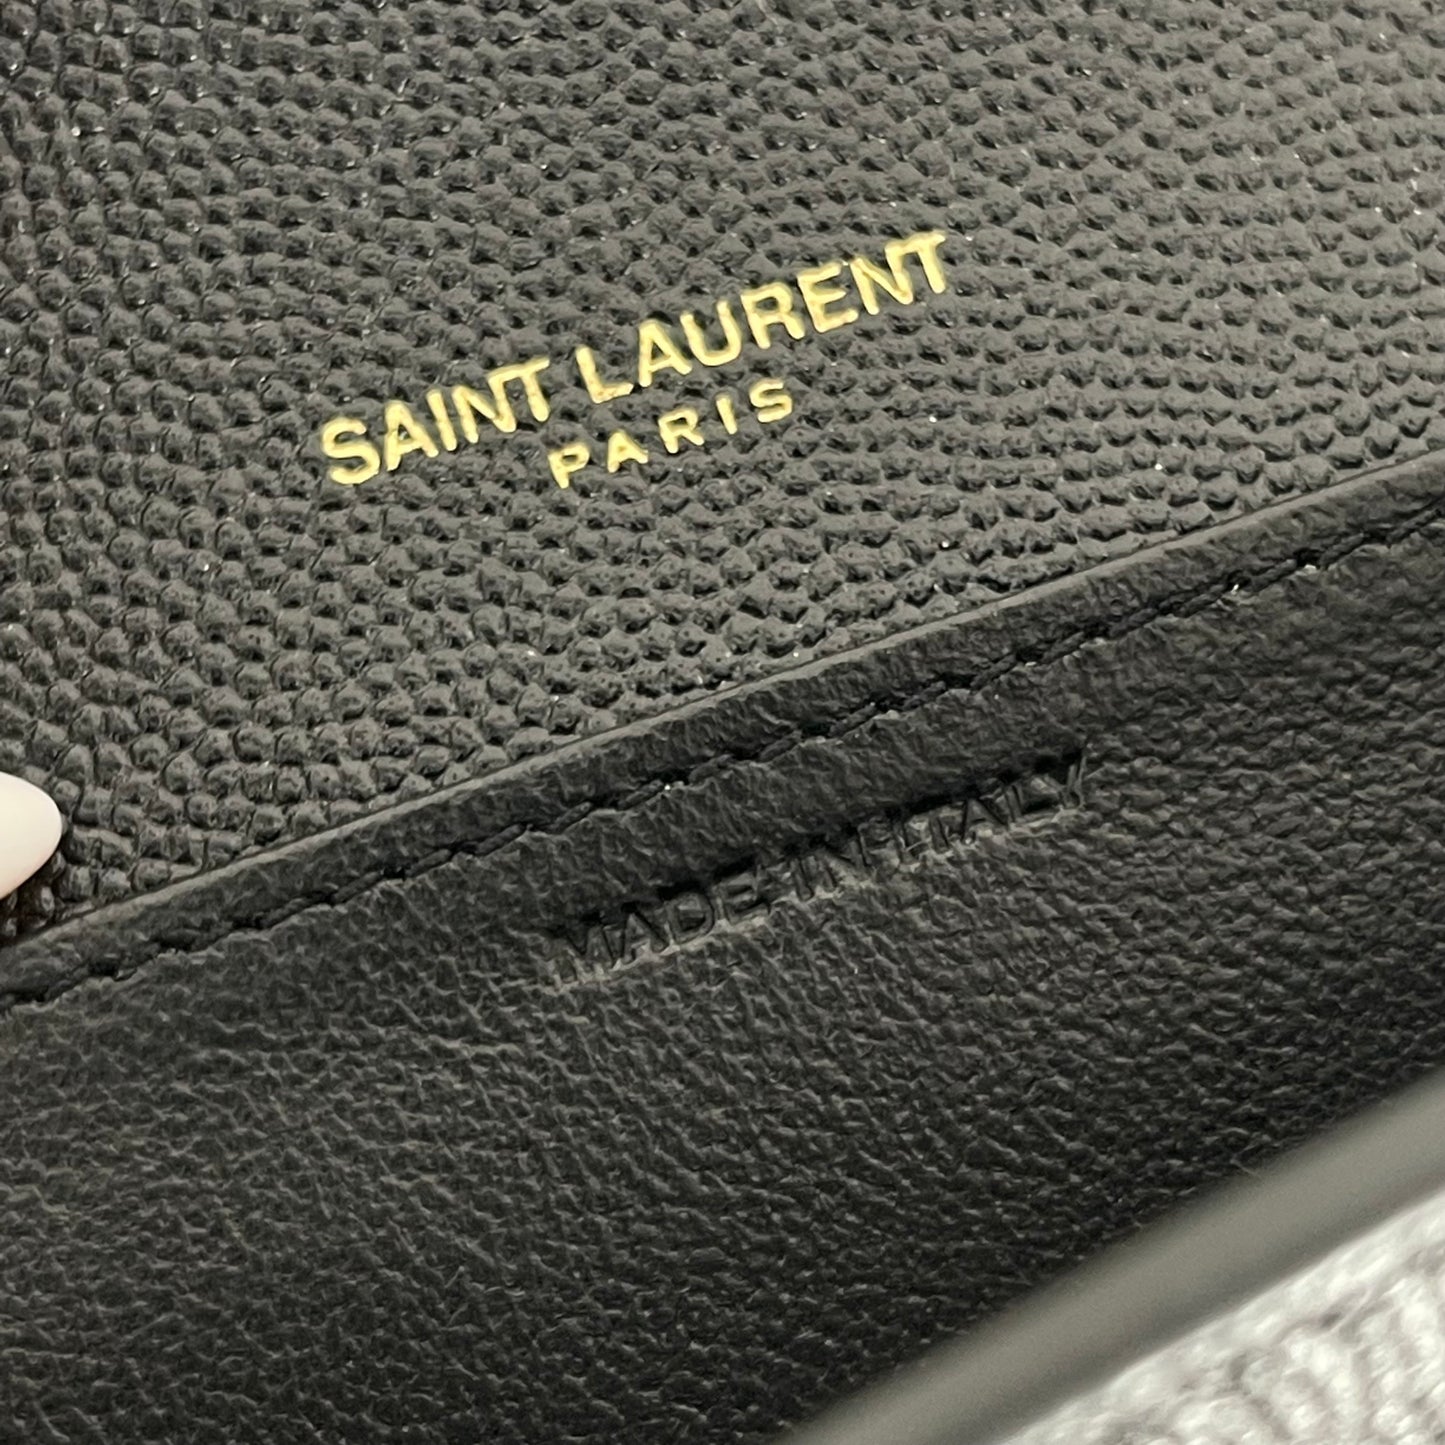 Authentic Saint Laurent Black Envelope WOC